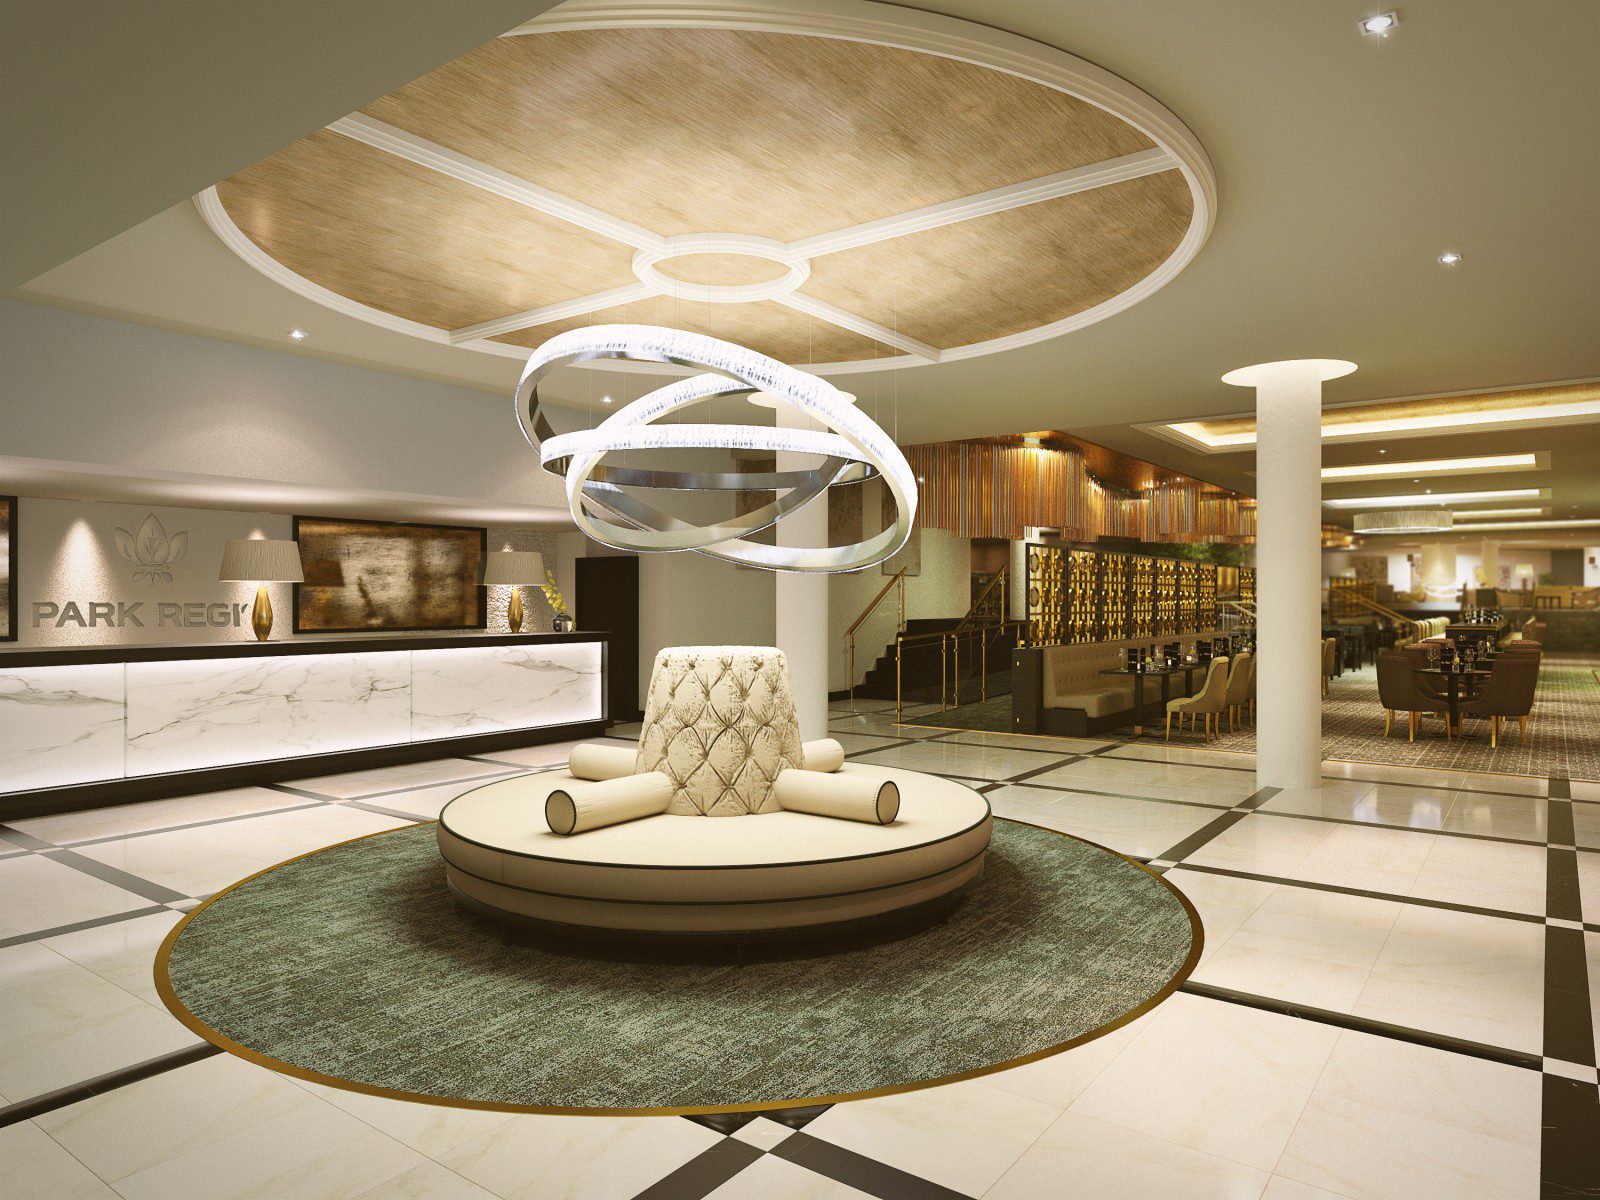 伯明翰市区最新的四星级酒店，在欧洲第一家该品牌酒店，将于3月29日星期二迎接其第一批客人